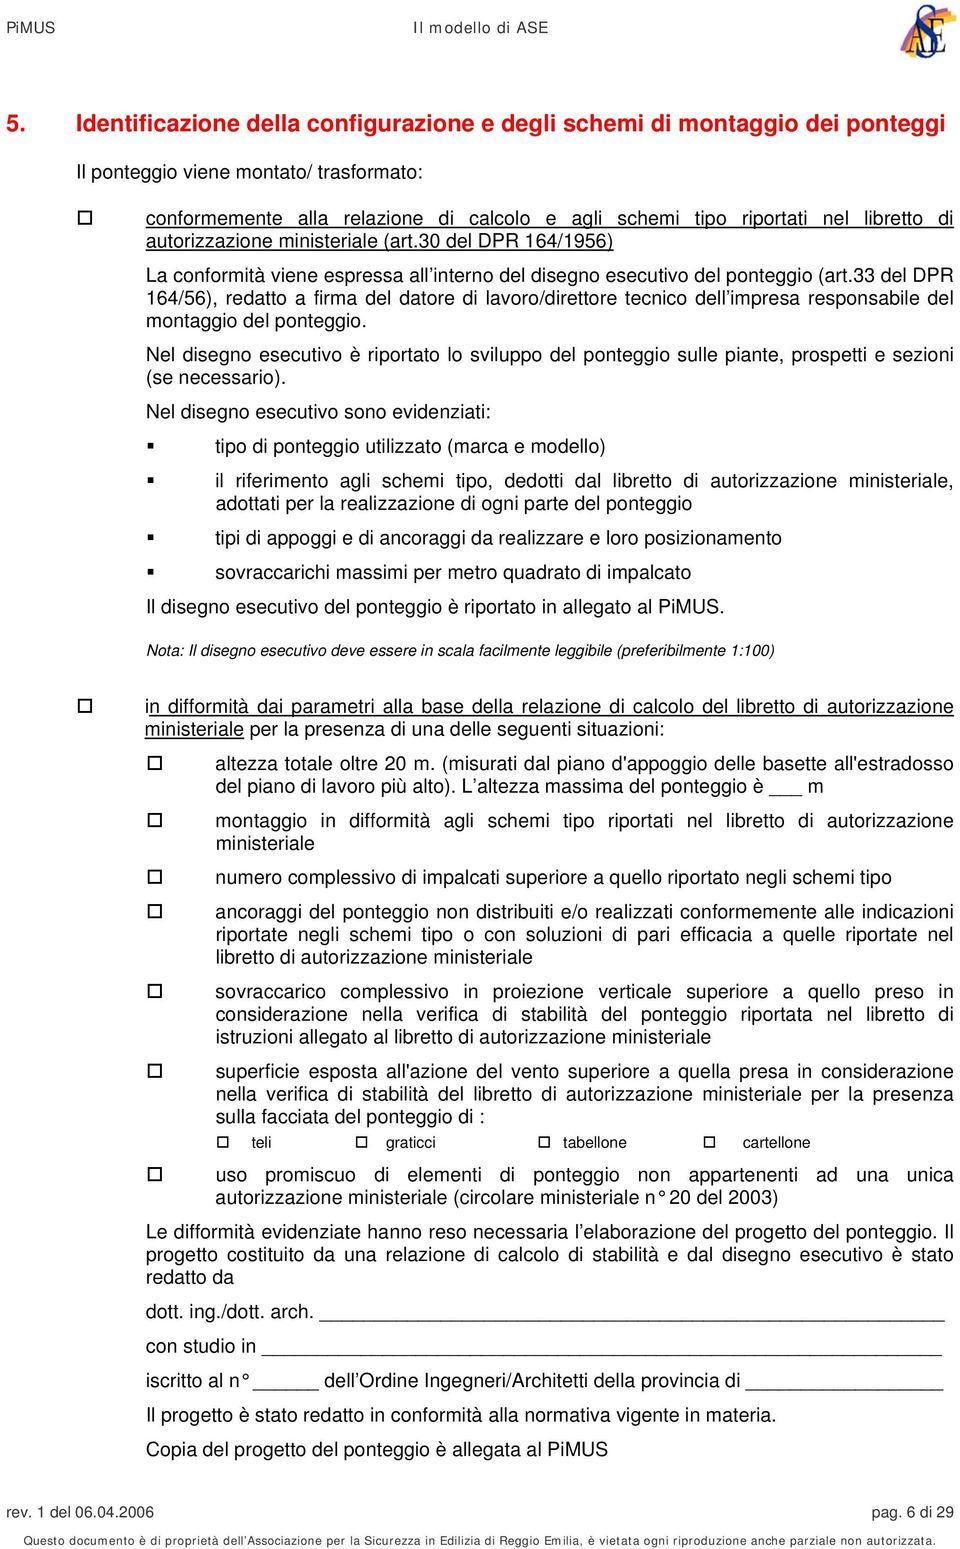 33 del DPR 164/56), redatto a firma del datore di lavoro/direttore tecnico dell impresa responsabile del montaggio del ponteggio.